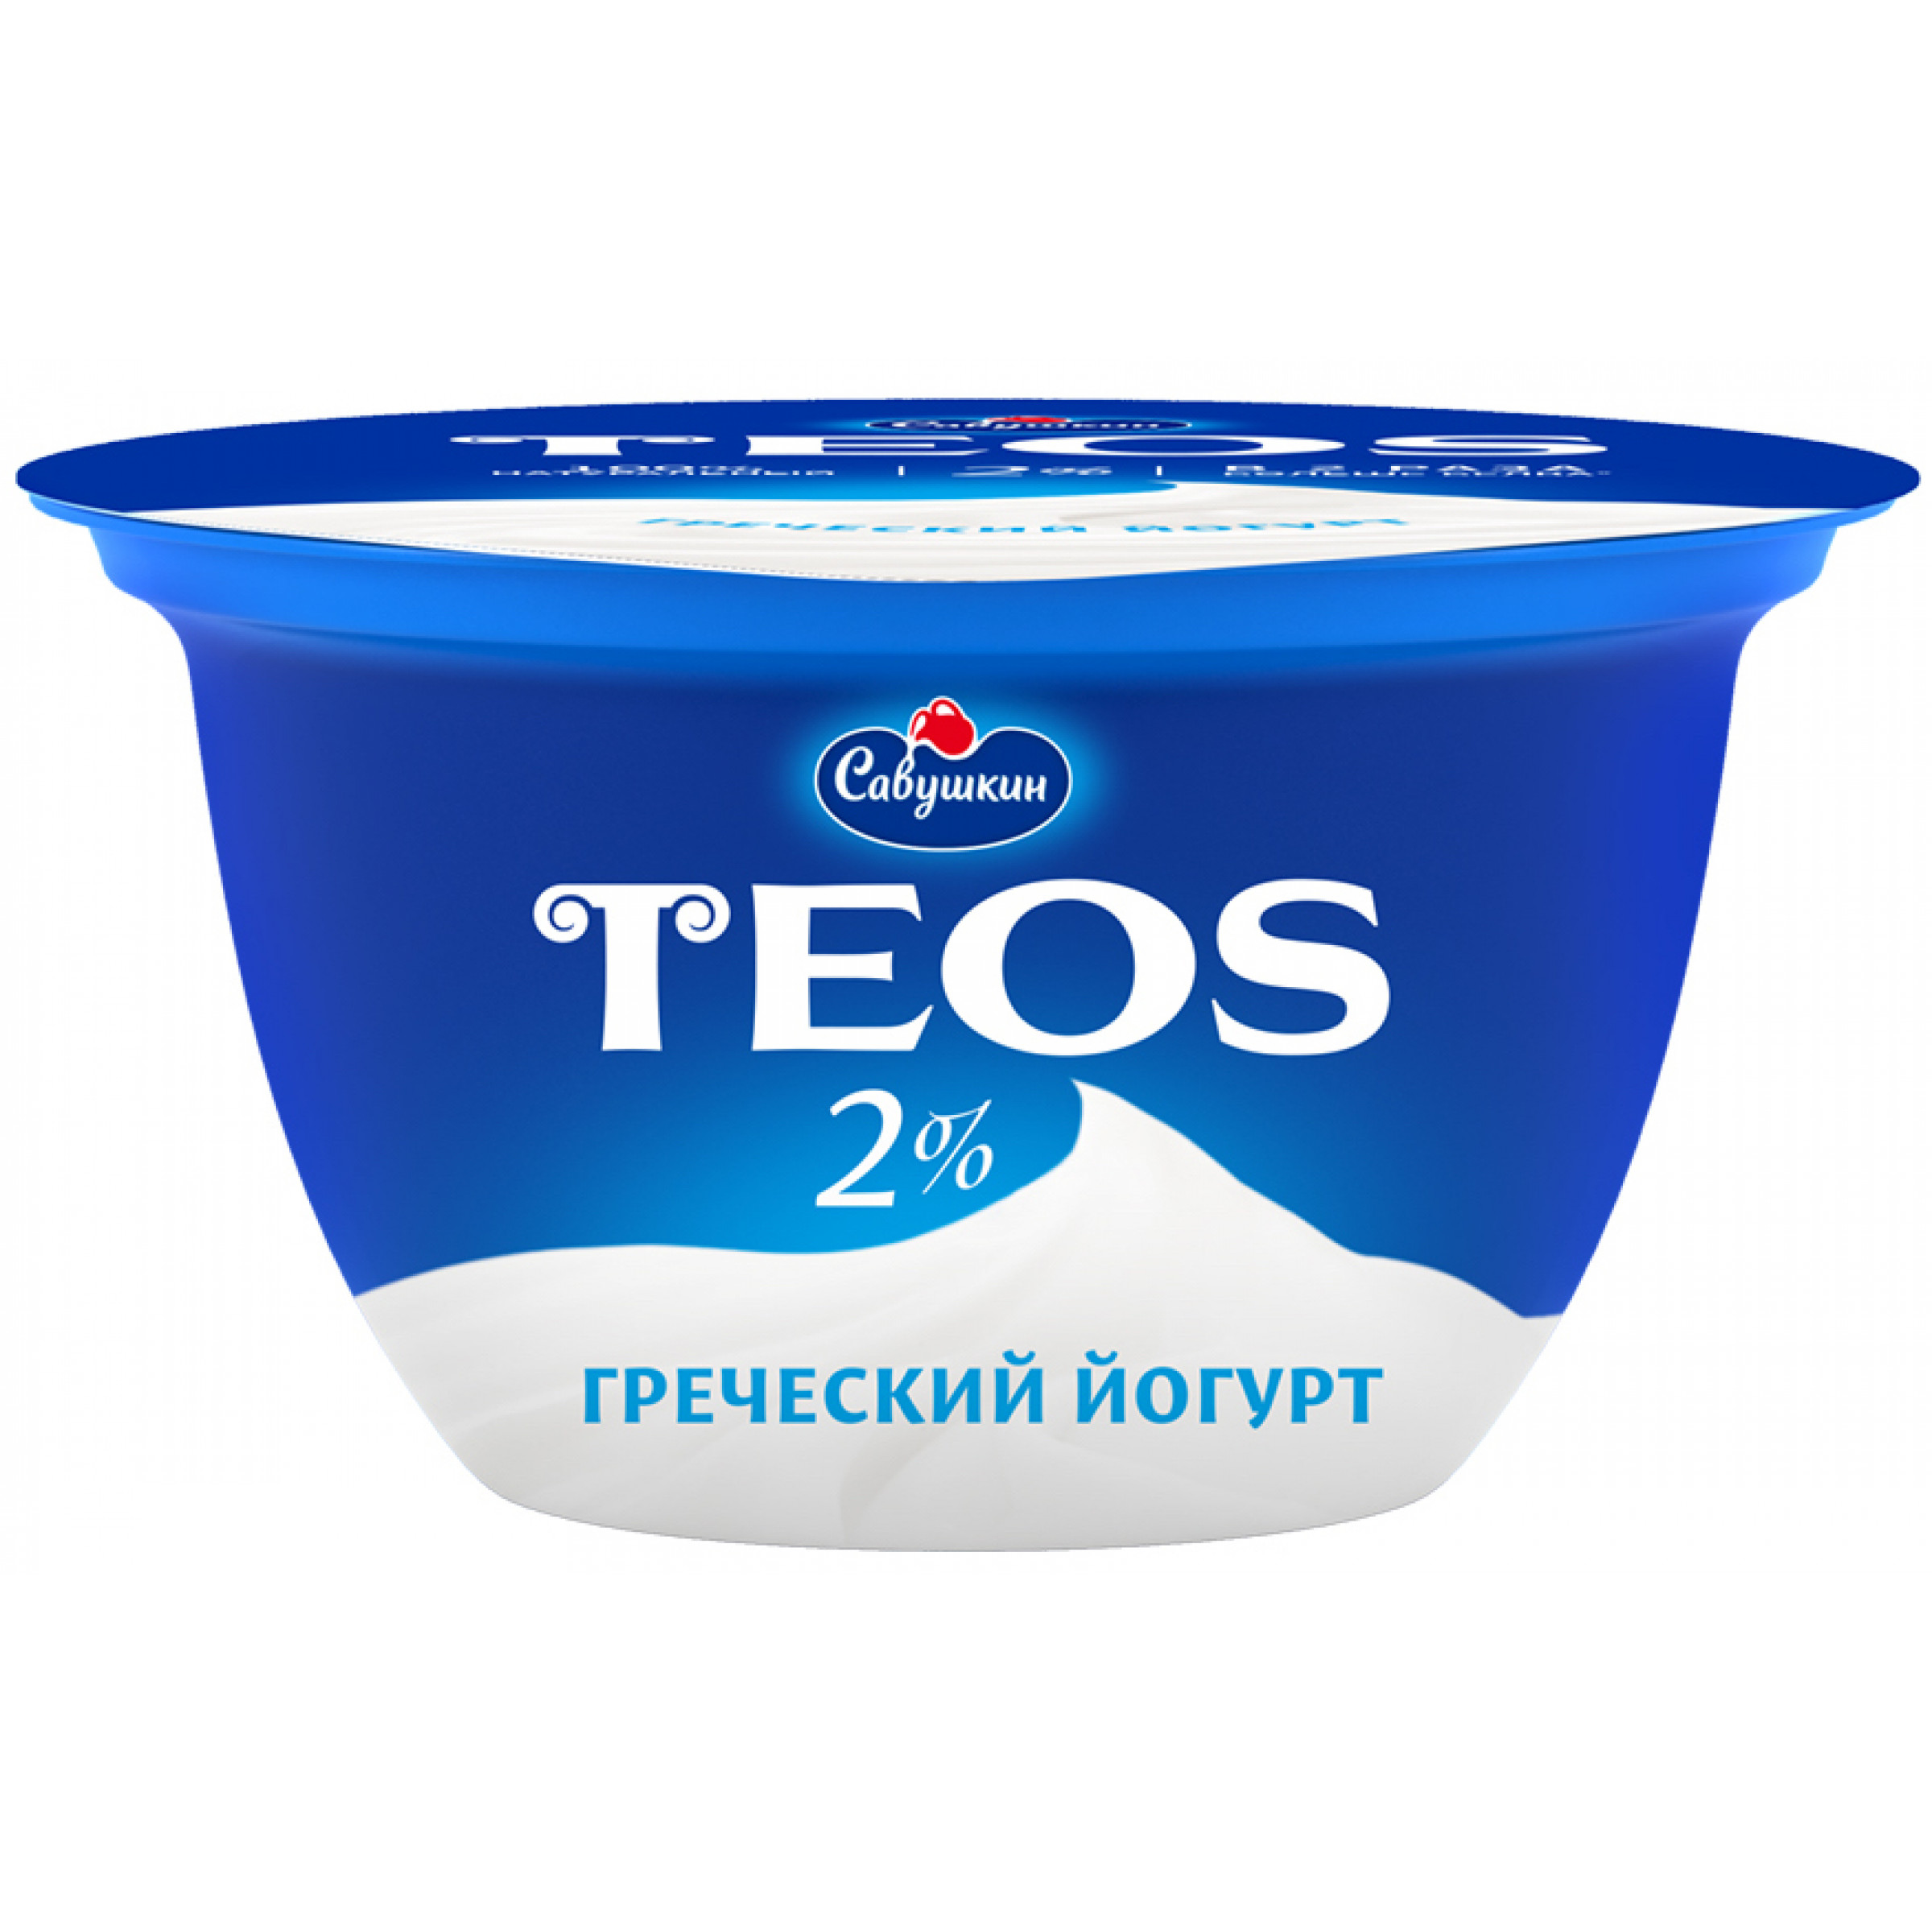 Греческий йогурт Teos 2% савушкин продукт, 140гр.